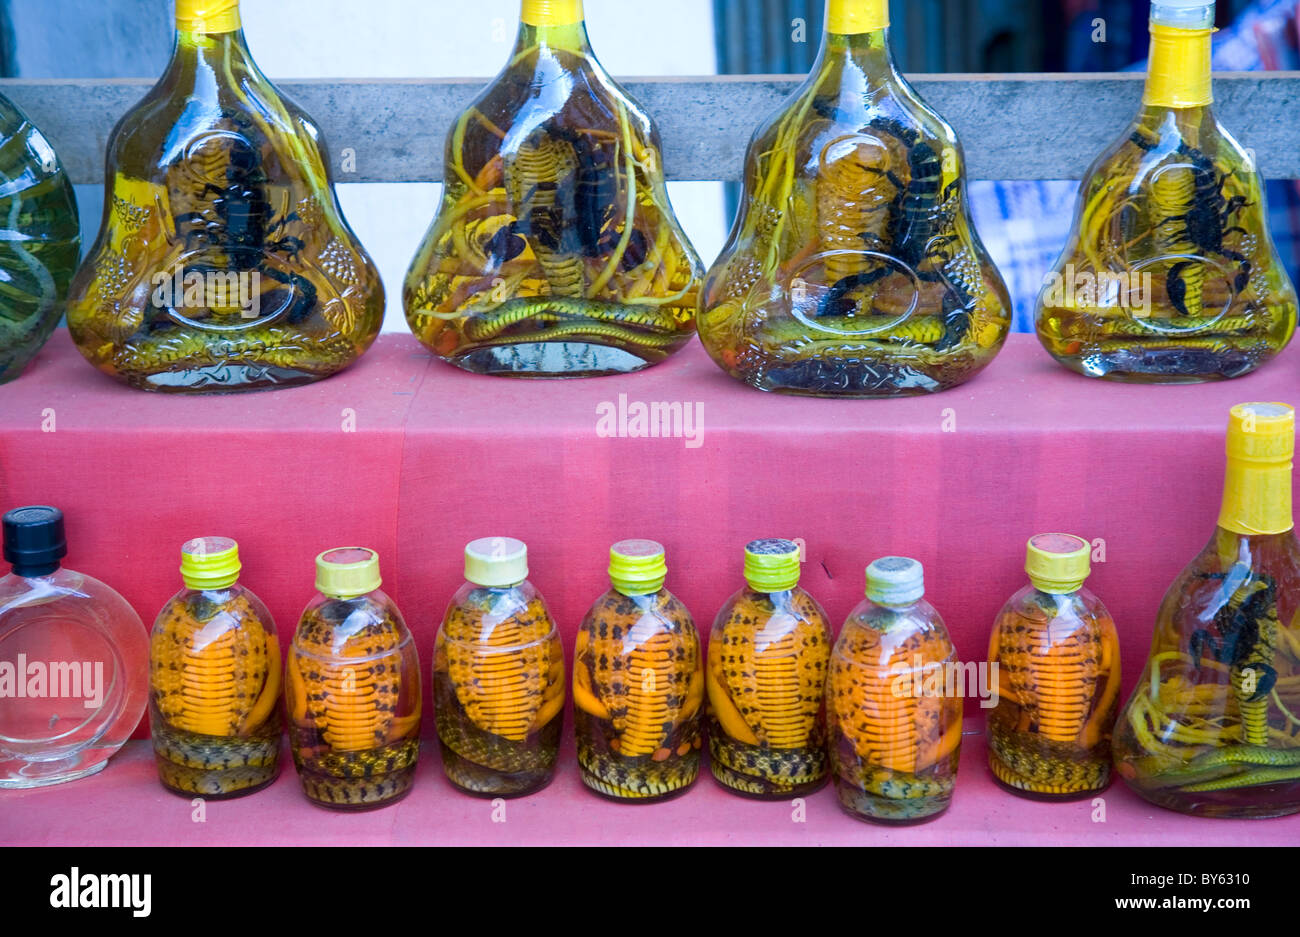 Boissons en bouteilles ( scorpion et cobra liquor) dans une boutique de cadeaux. Sapa, province de Lao Cai, Vietnam. Banque D'Images